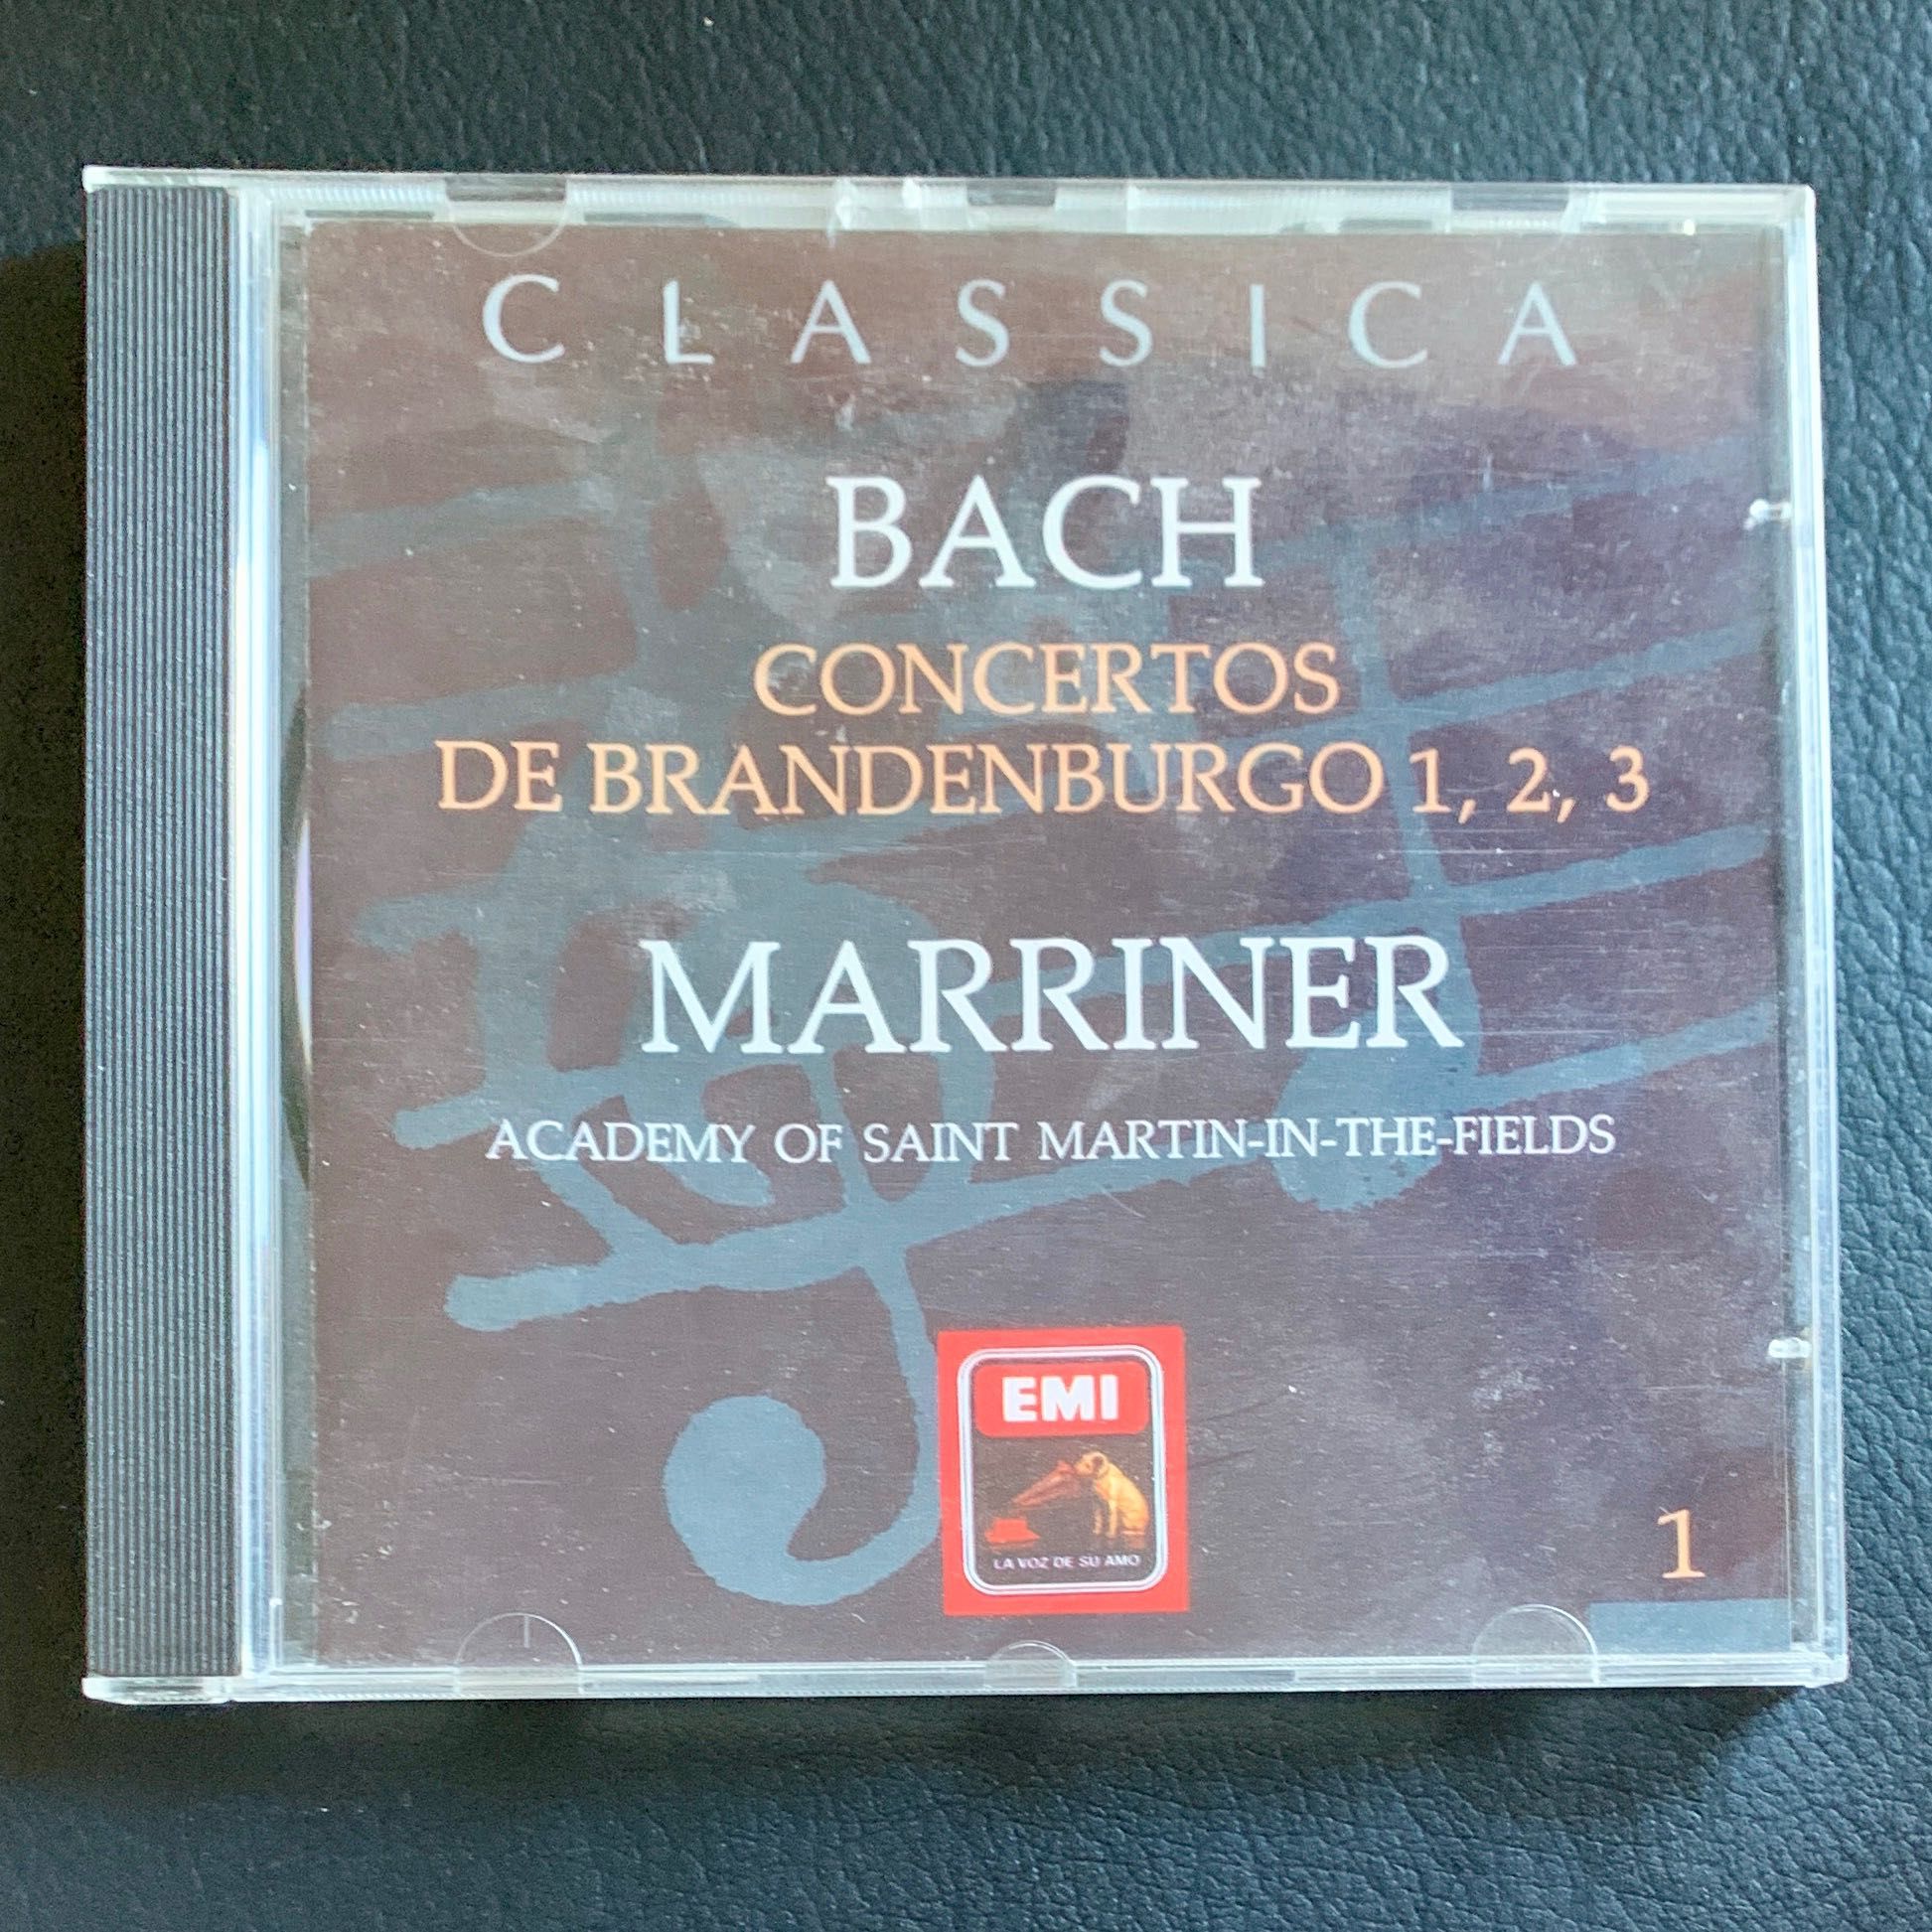 2. CDs clássica: Bach, Viana da Mota, Braga Santos e outros